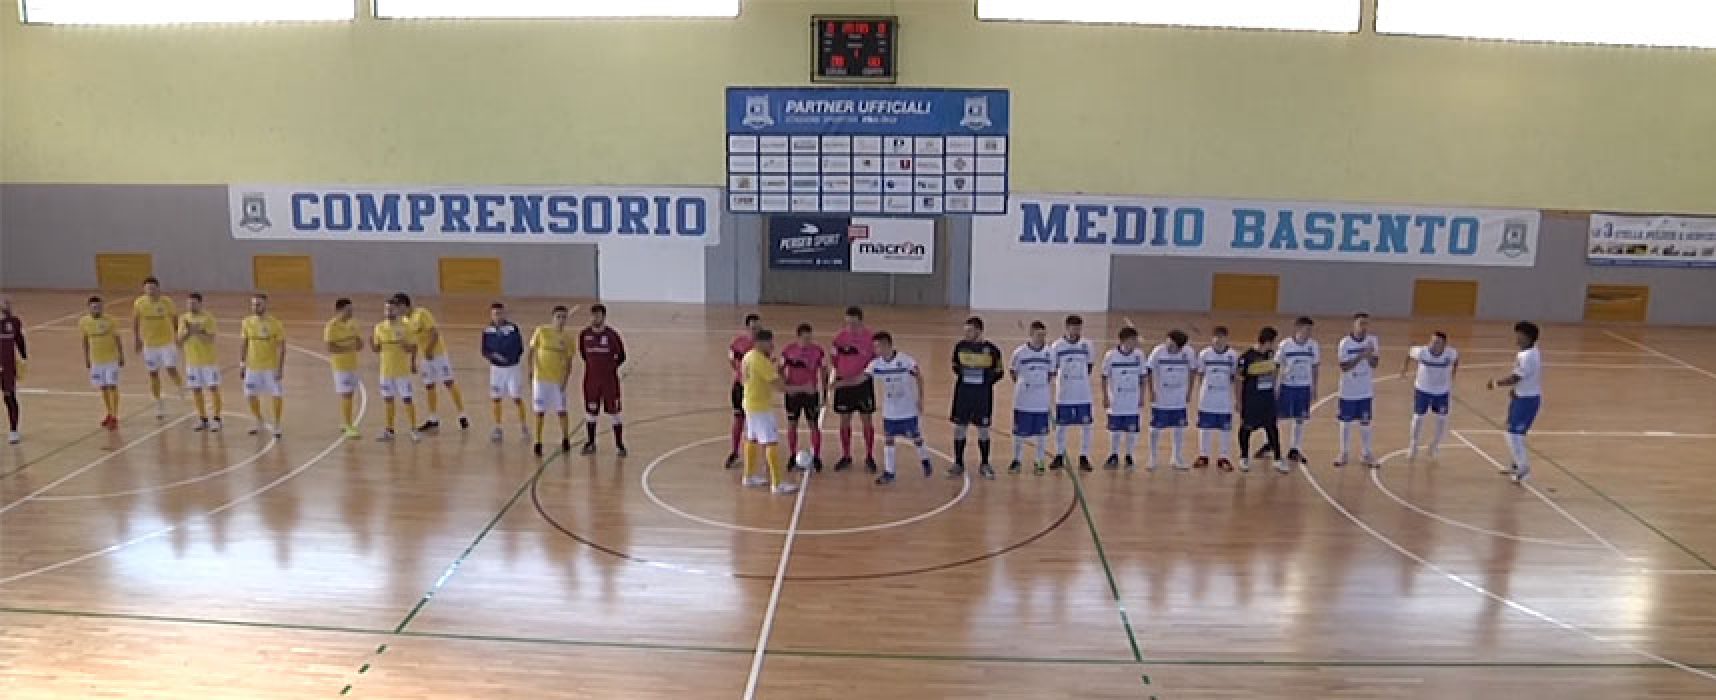 Futsal Bisceglie sconfitto dalla capolista, ora testa al match decisivo col Marigliano